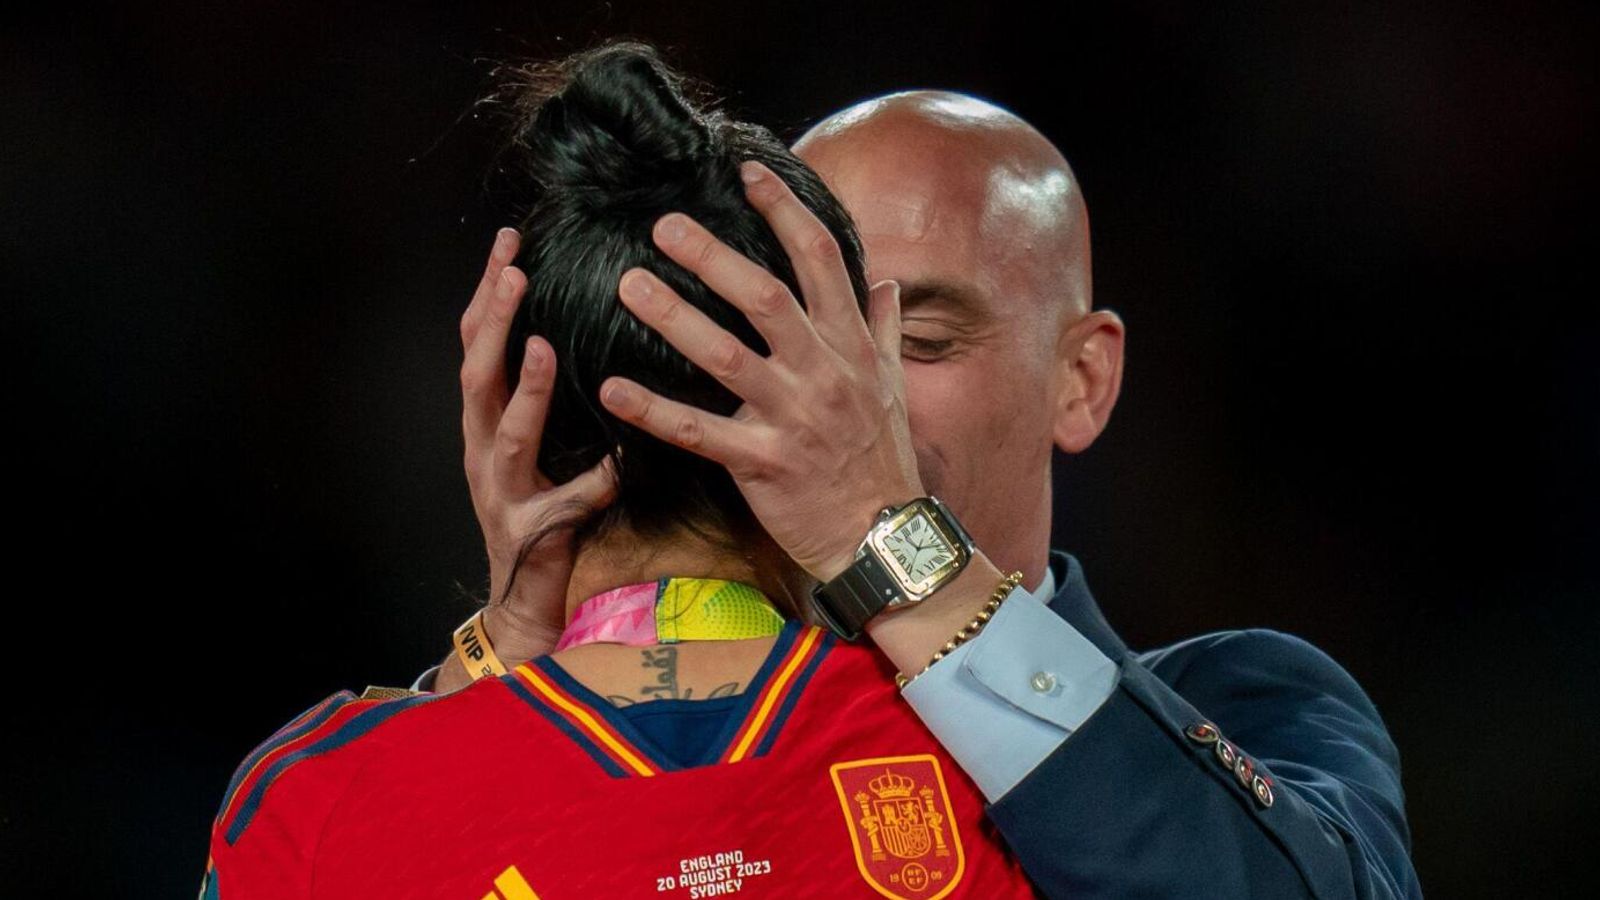 Футболистка Дженни Эрмосо была исключена из сборной Испании «чтобы защитить ее» после скандала с поцелуями на чемпионате мира |  Новости мира